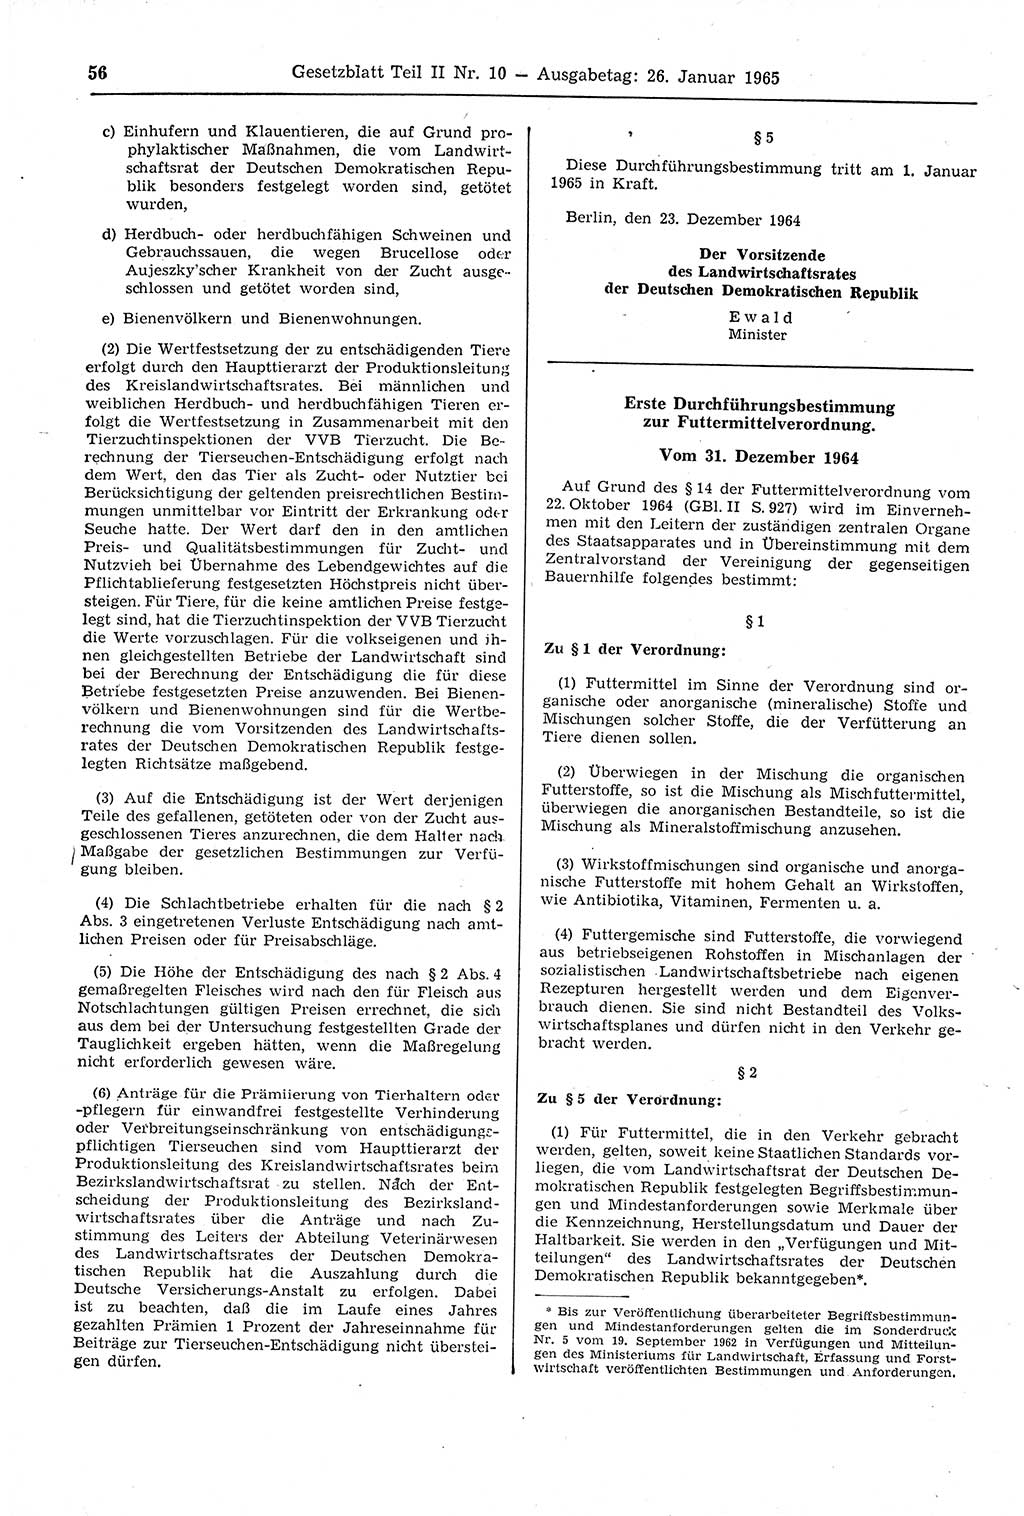 Gesetzblatt (GBl.) der Deutschen Demokratischen Republik (DDR) Teil ⅠⅠ 1965, Seite 56 (GBl. DDR ⅠⅠ 1965, S. 56)